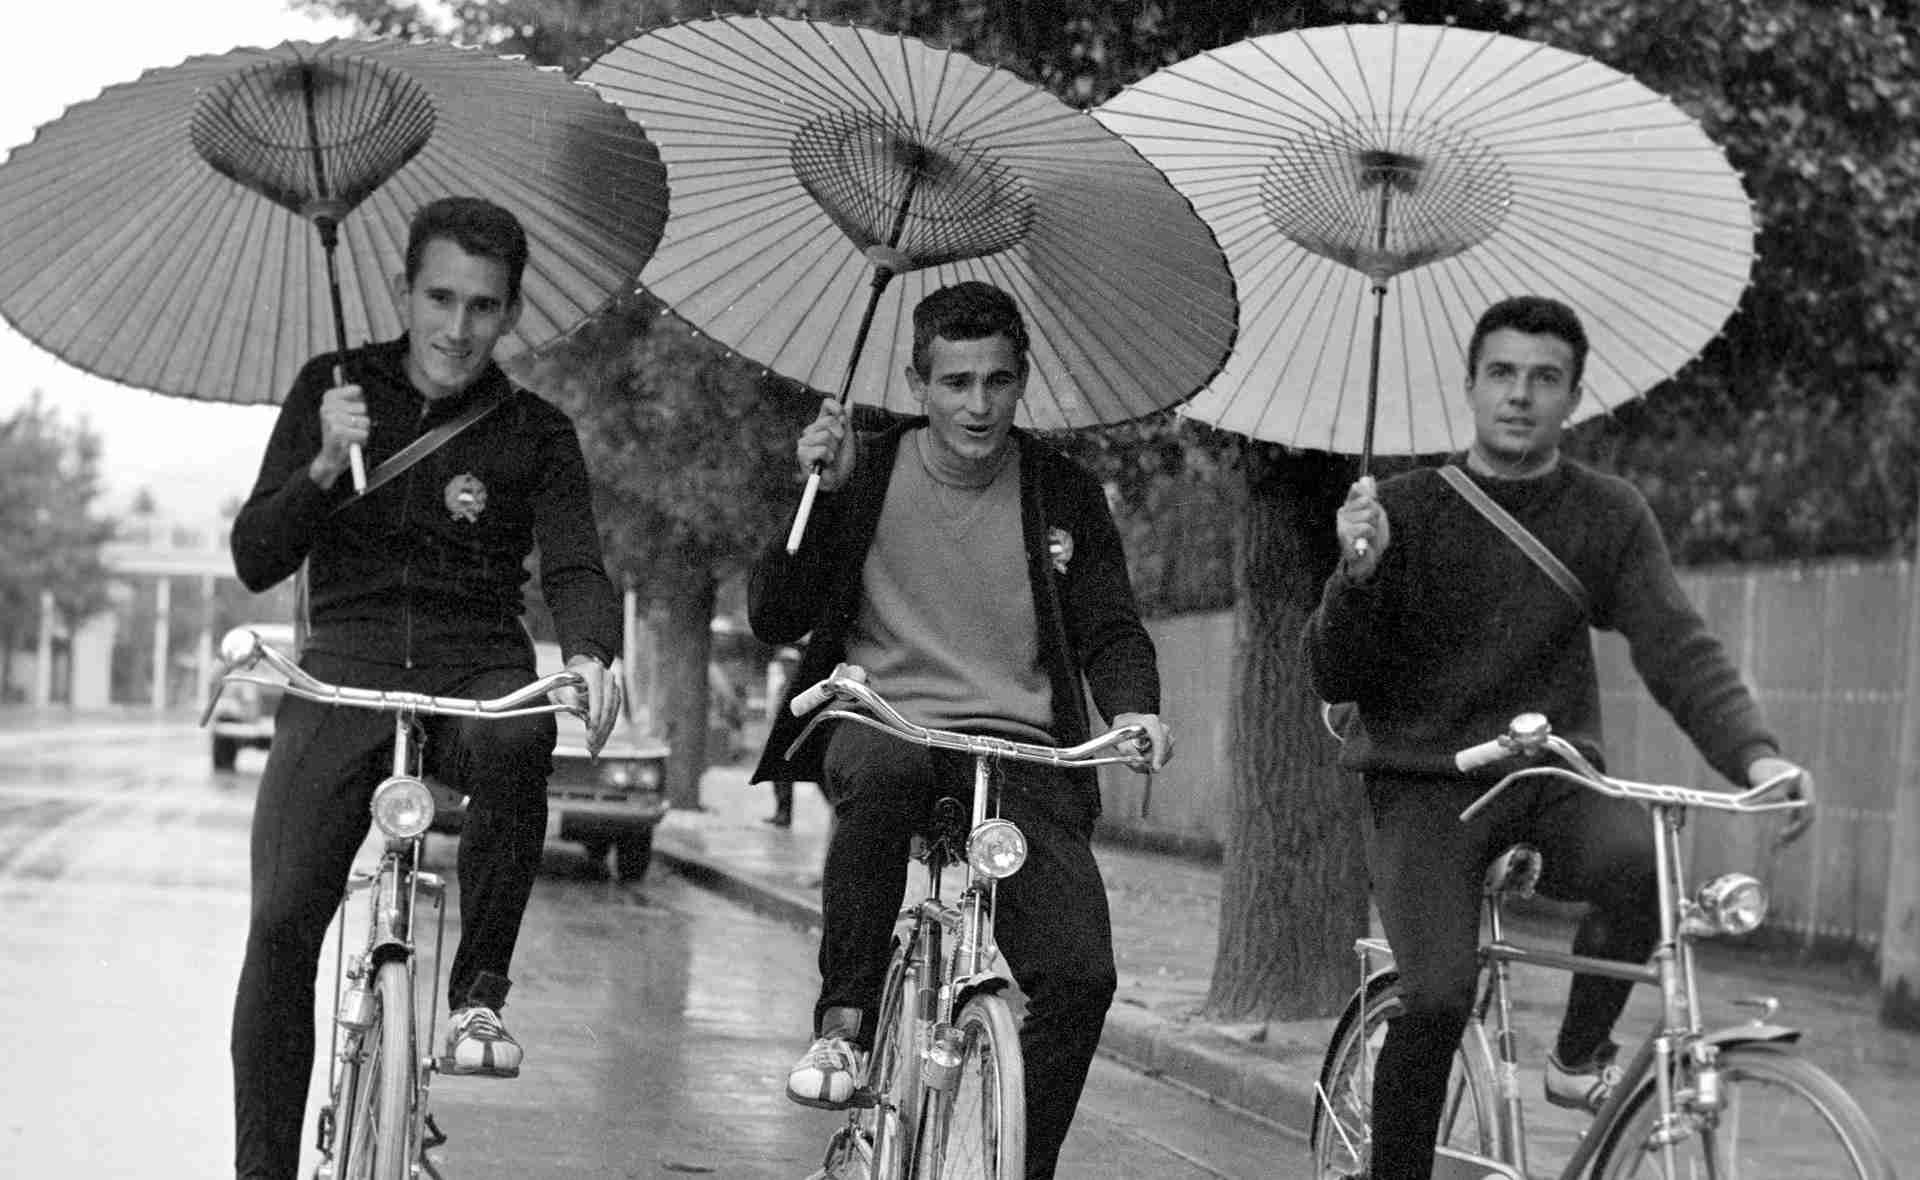 選手村で和傘をさしながら自転車に乗る三人の選手
（左から順に）マホー・ラースロー (Mahó László)、メーサーロシュ・アンドラーシュ (Mészáros András)、シュタームス・フェレンツ (Stámusz Ferenc) (©MTI/OL)